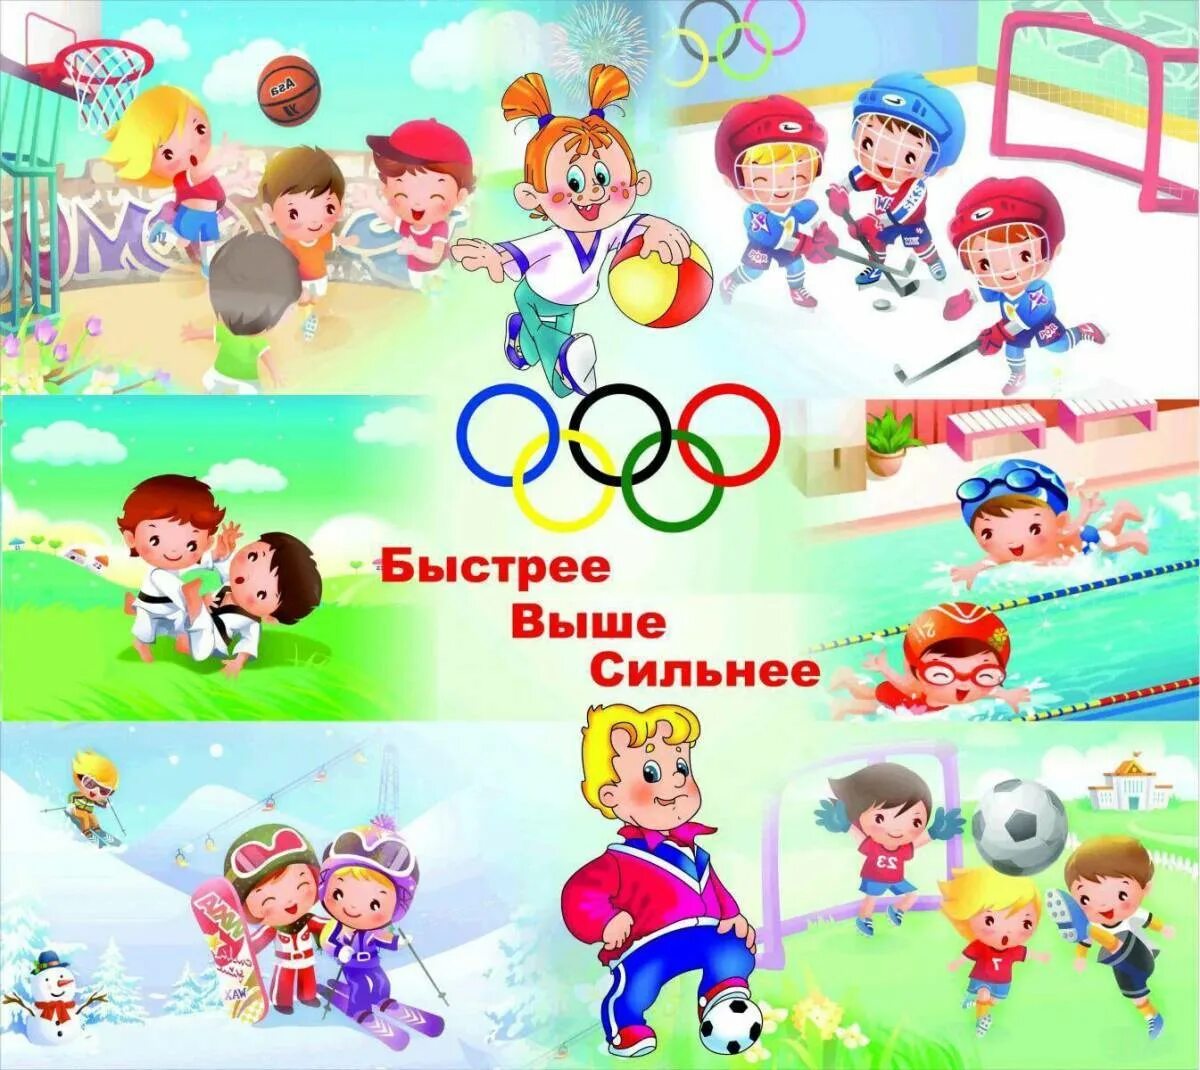 Программа спорт детям. Спорт в детском саду. Спортивный праздник для детей. Баннеры на спортивную тематику. Картинки спортивные детские.